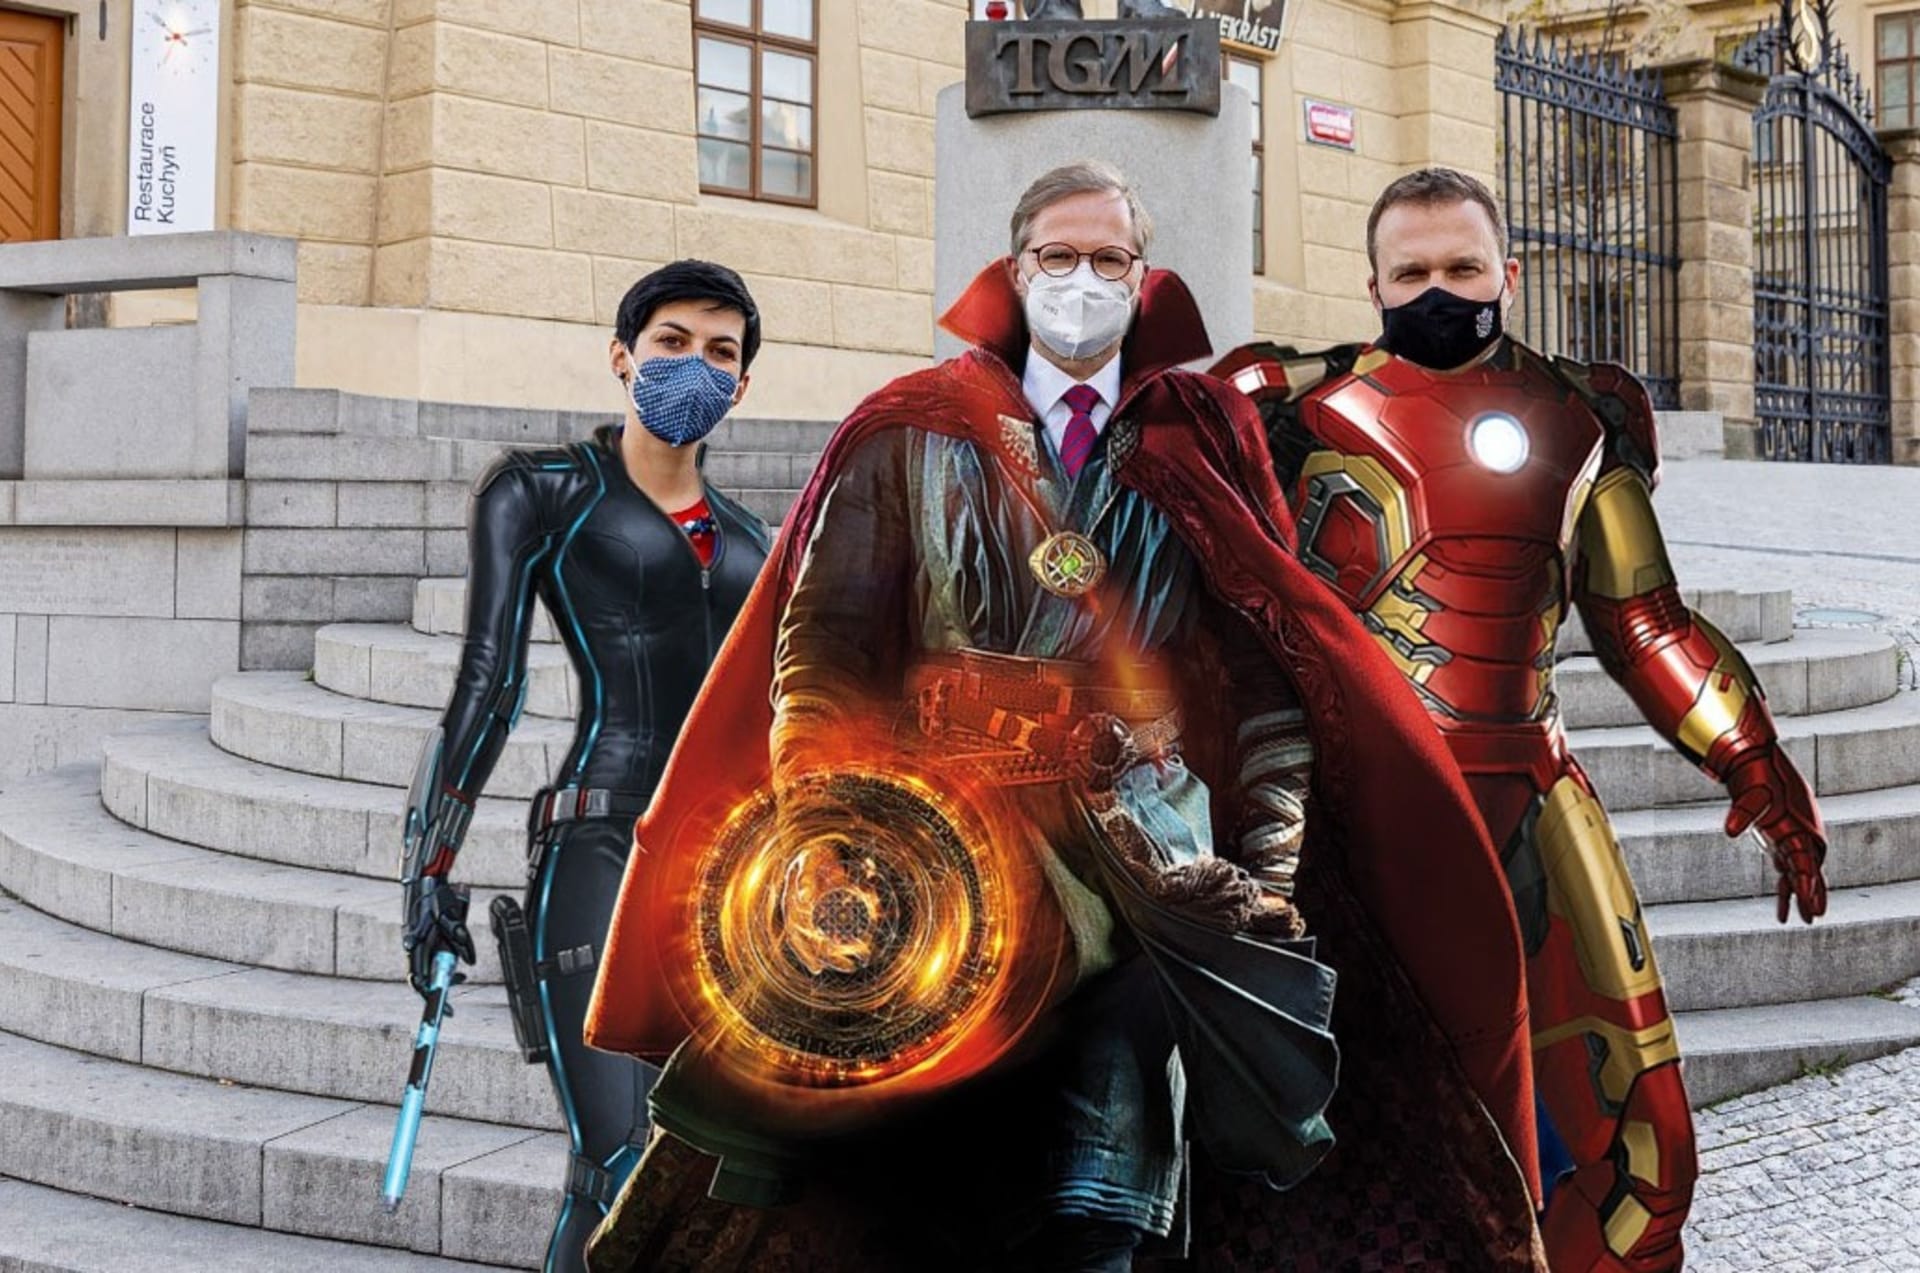 Markéta Pekarová Adamová (TOP 09), Petr Fiala (ODS) a Marian Jurečka (KDU-ČSL) jako superhrdinové ze světa Avengers